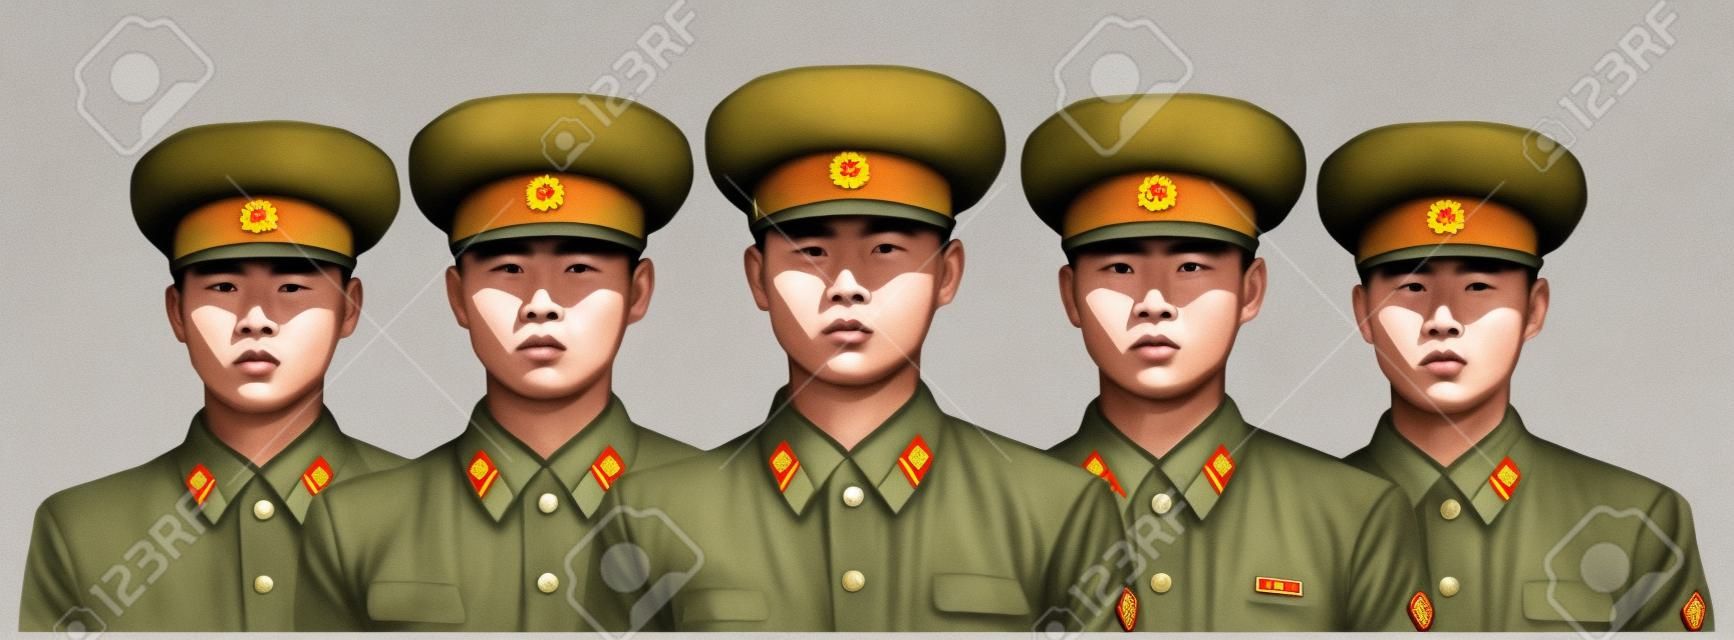 身穿制服的北韓士兵的插圖